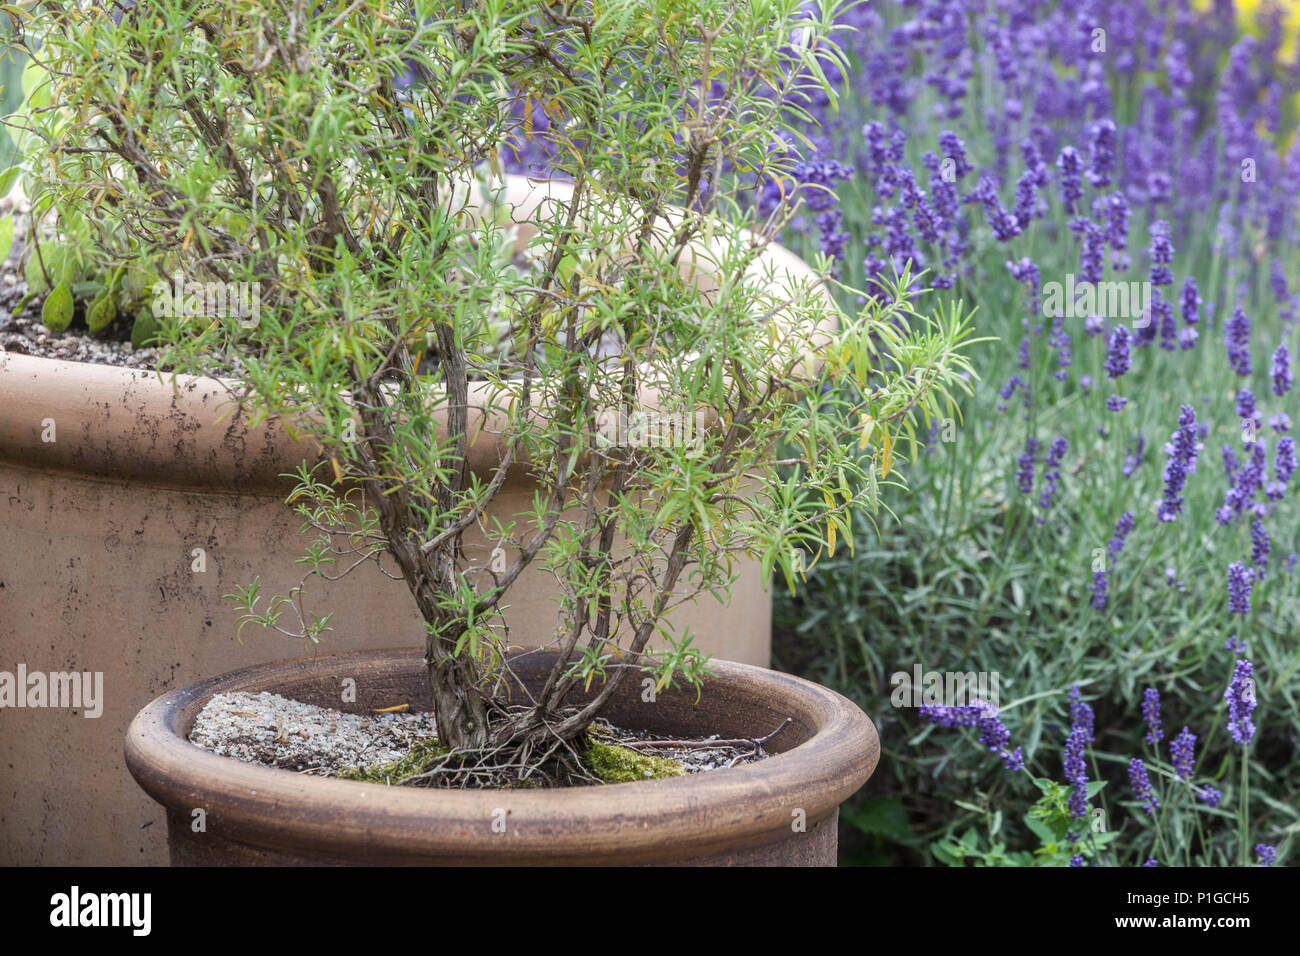 Mediterranean garden type, ceramic flower pots garden herb lavender Stock Photo